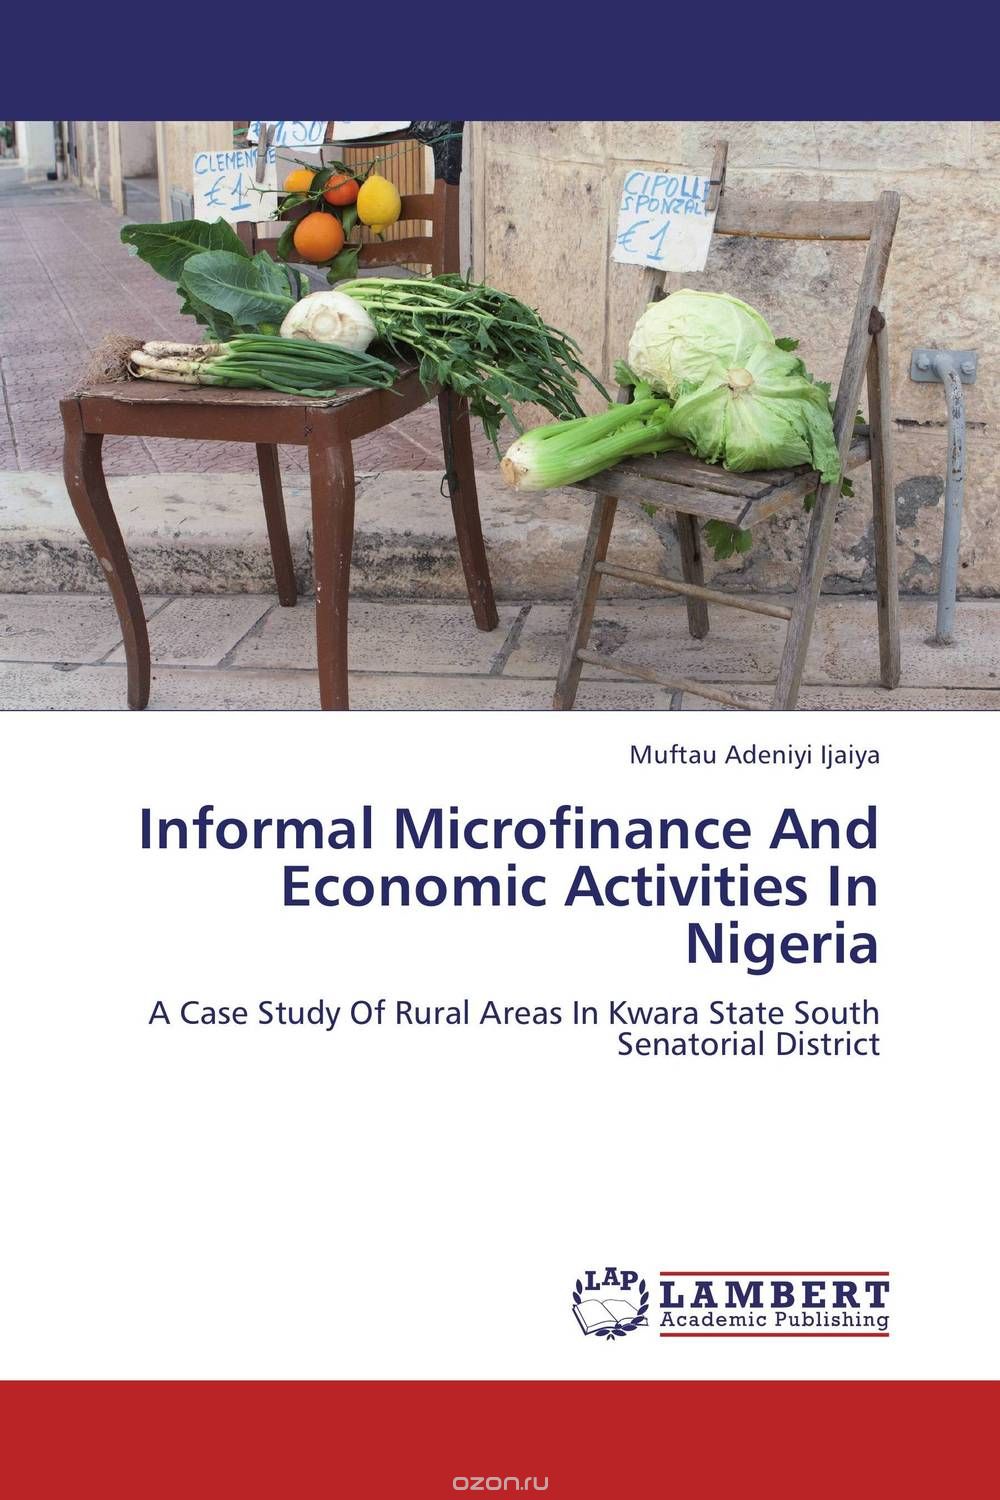 Скачать книгу "Informal Microfinance And Economic Activities In Nigeria"